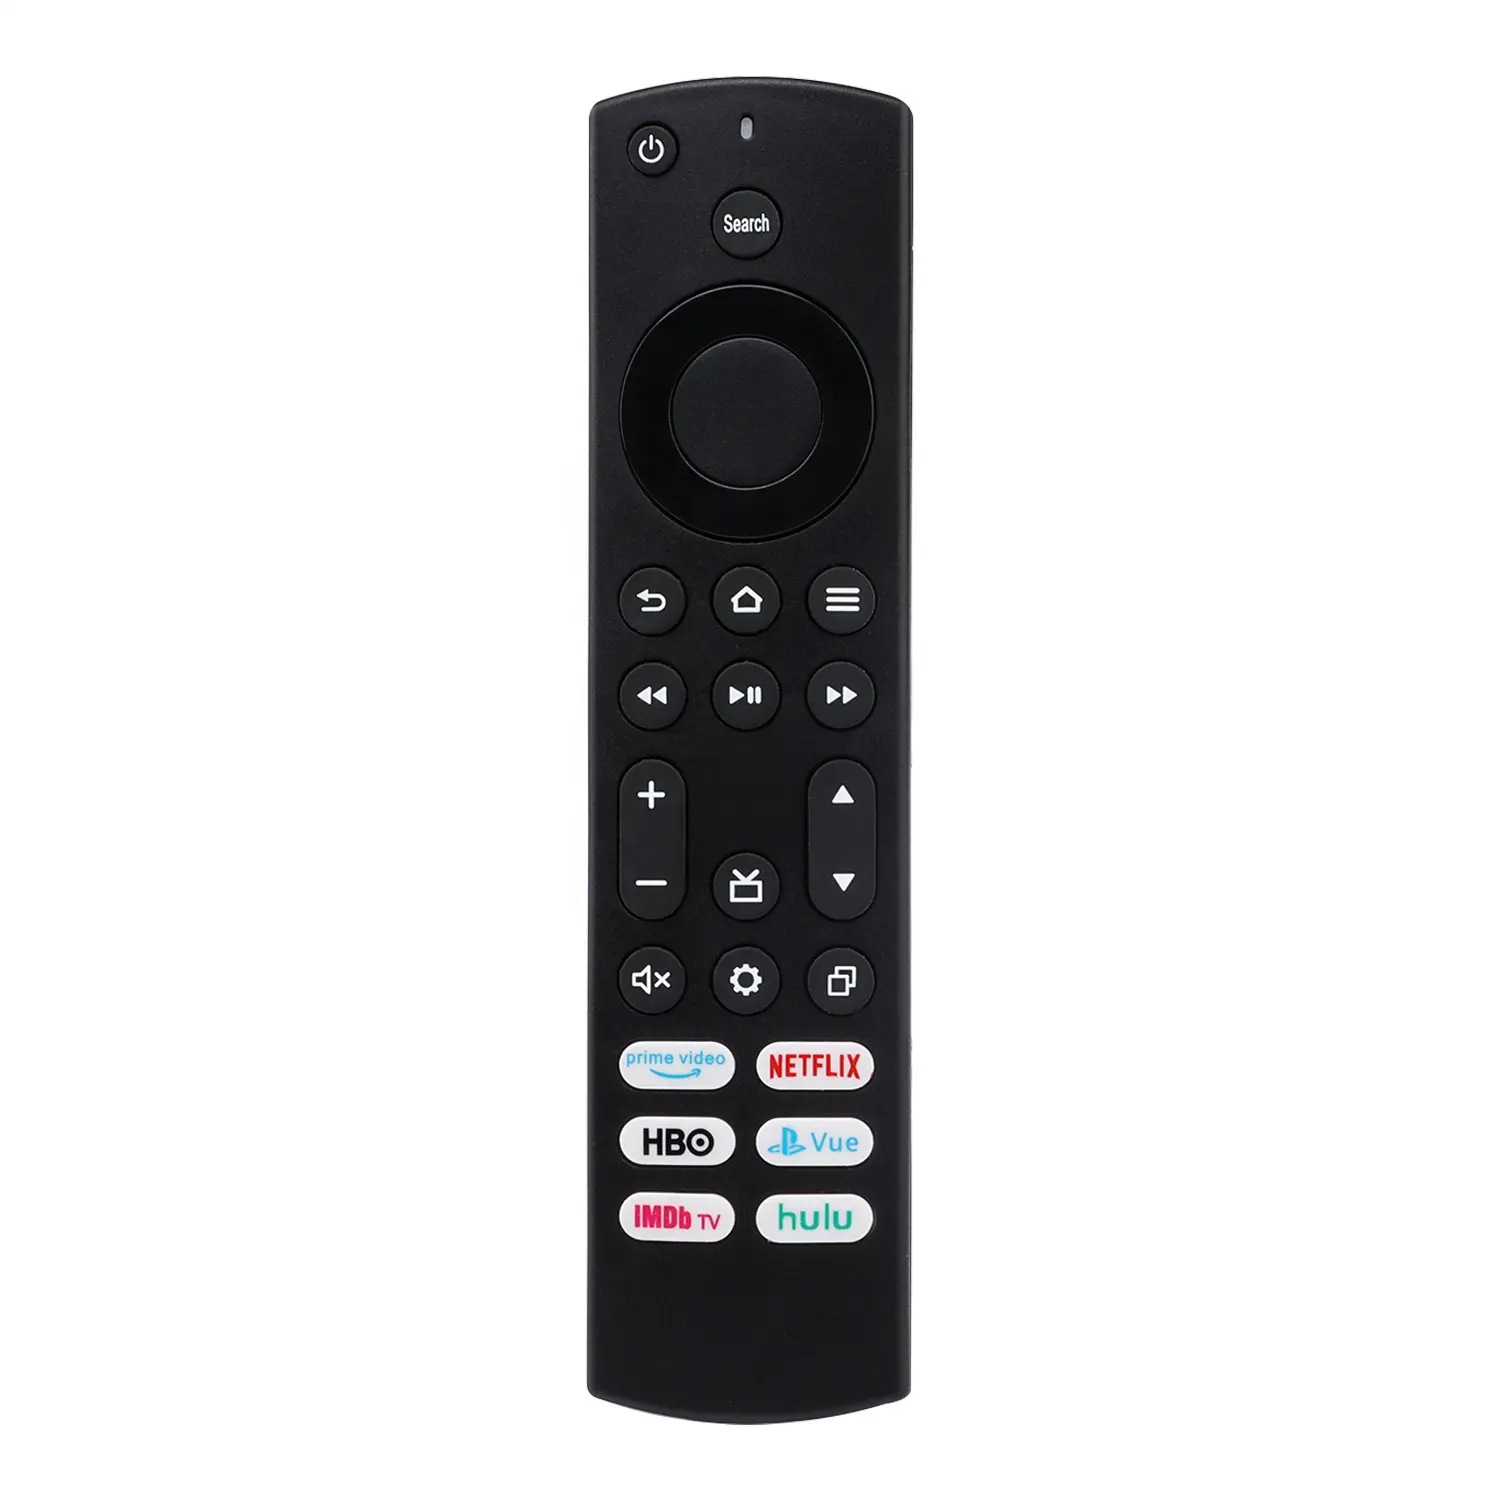 6 개의 버튼이 있는 휘장 및 Toshiba 스마트 TV용 교체 리모컨, 프라임 비디오, ImdbTV, 휘장 및 Toshiba Fire TV용 훌루